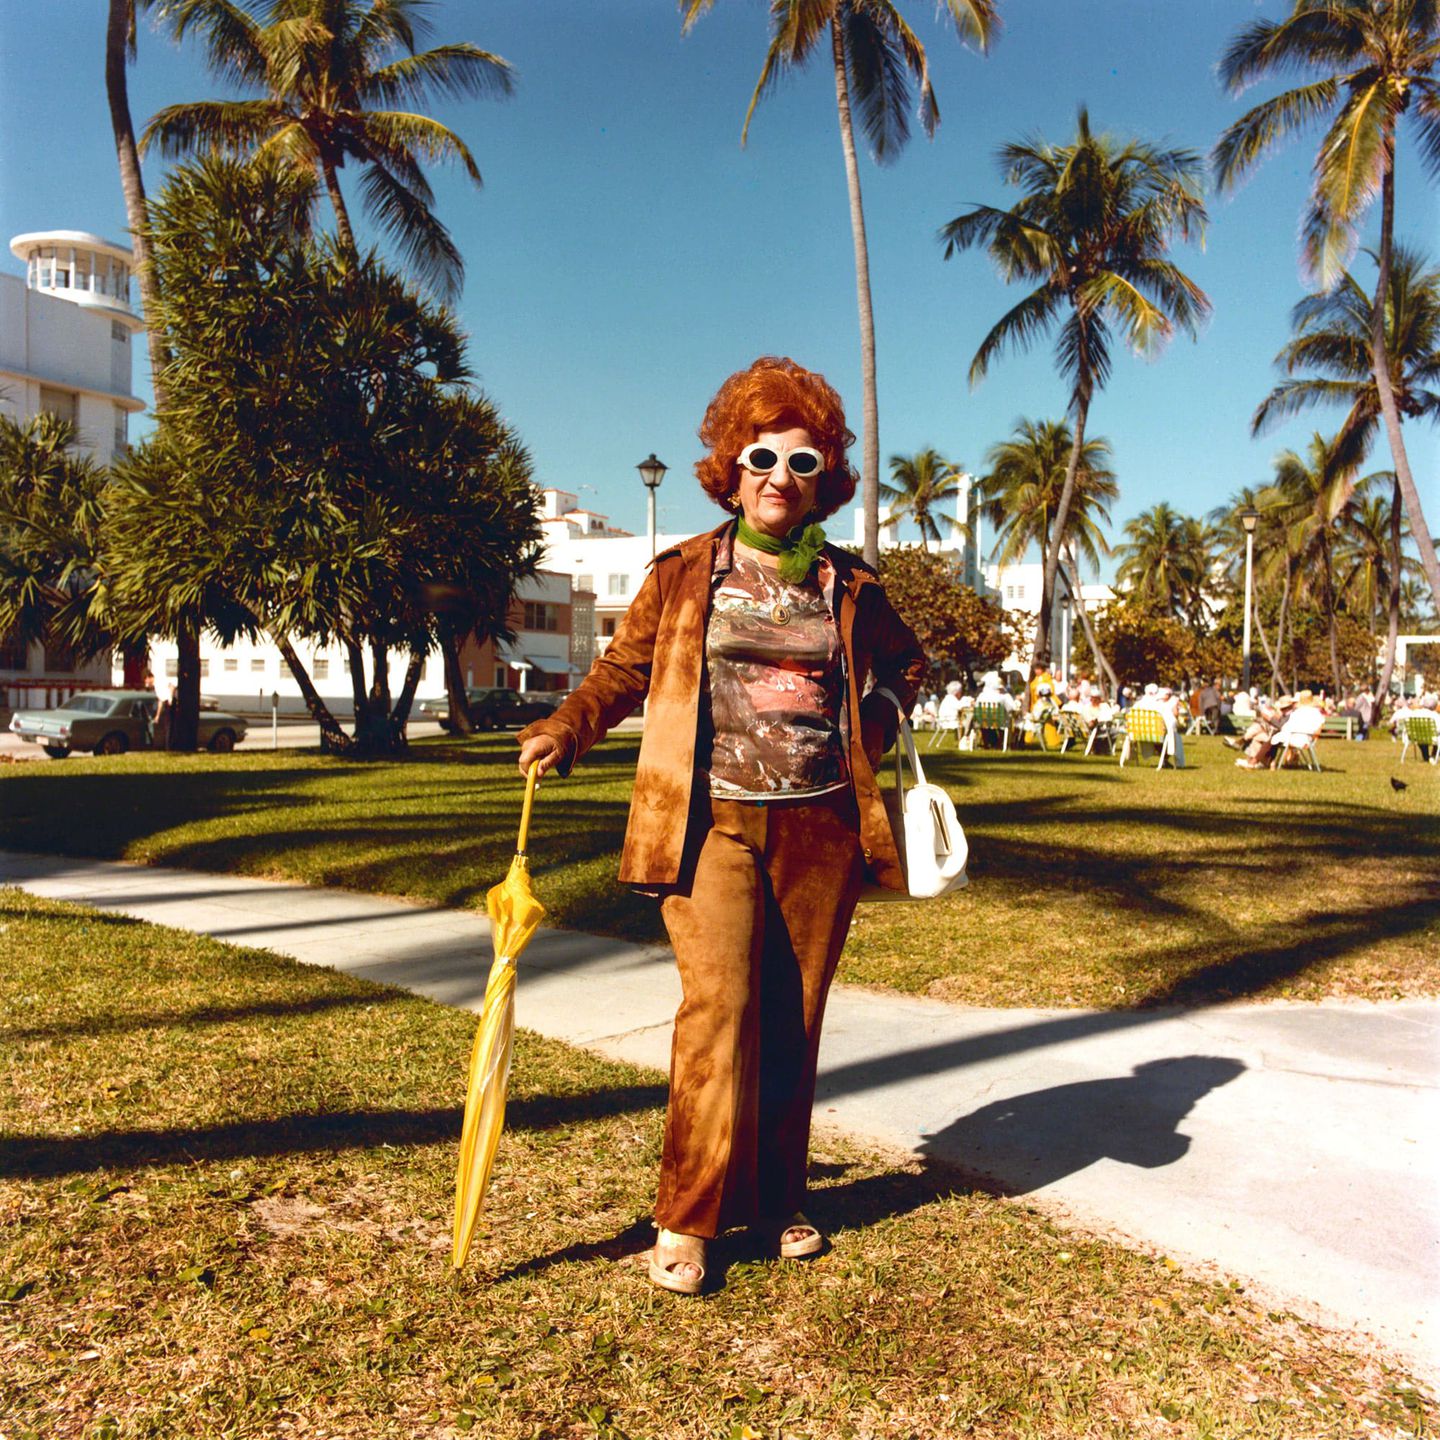 Vivid 1970s Miami Beach culture: All quirk, no vice – The Washington Post